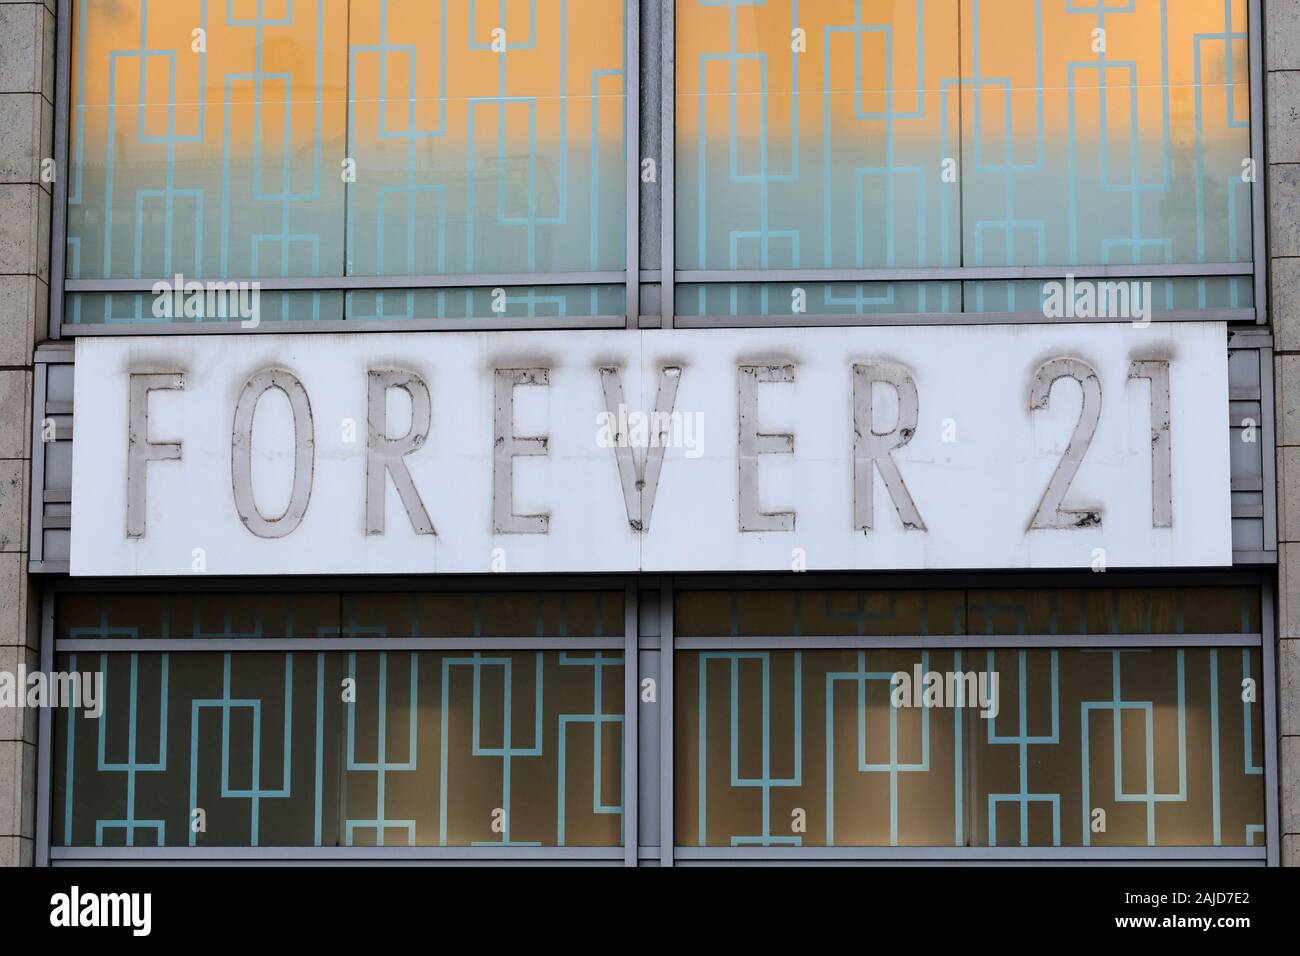 I contorni sfumati di un eterno 21 logo che è stato rimosso da una posizione chiusa up store in Union Square a Manhattan, New York, NY Foto Stock